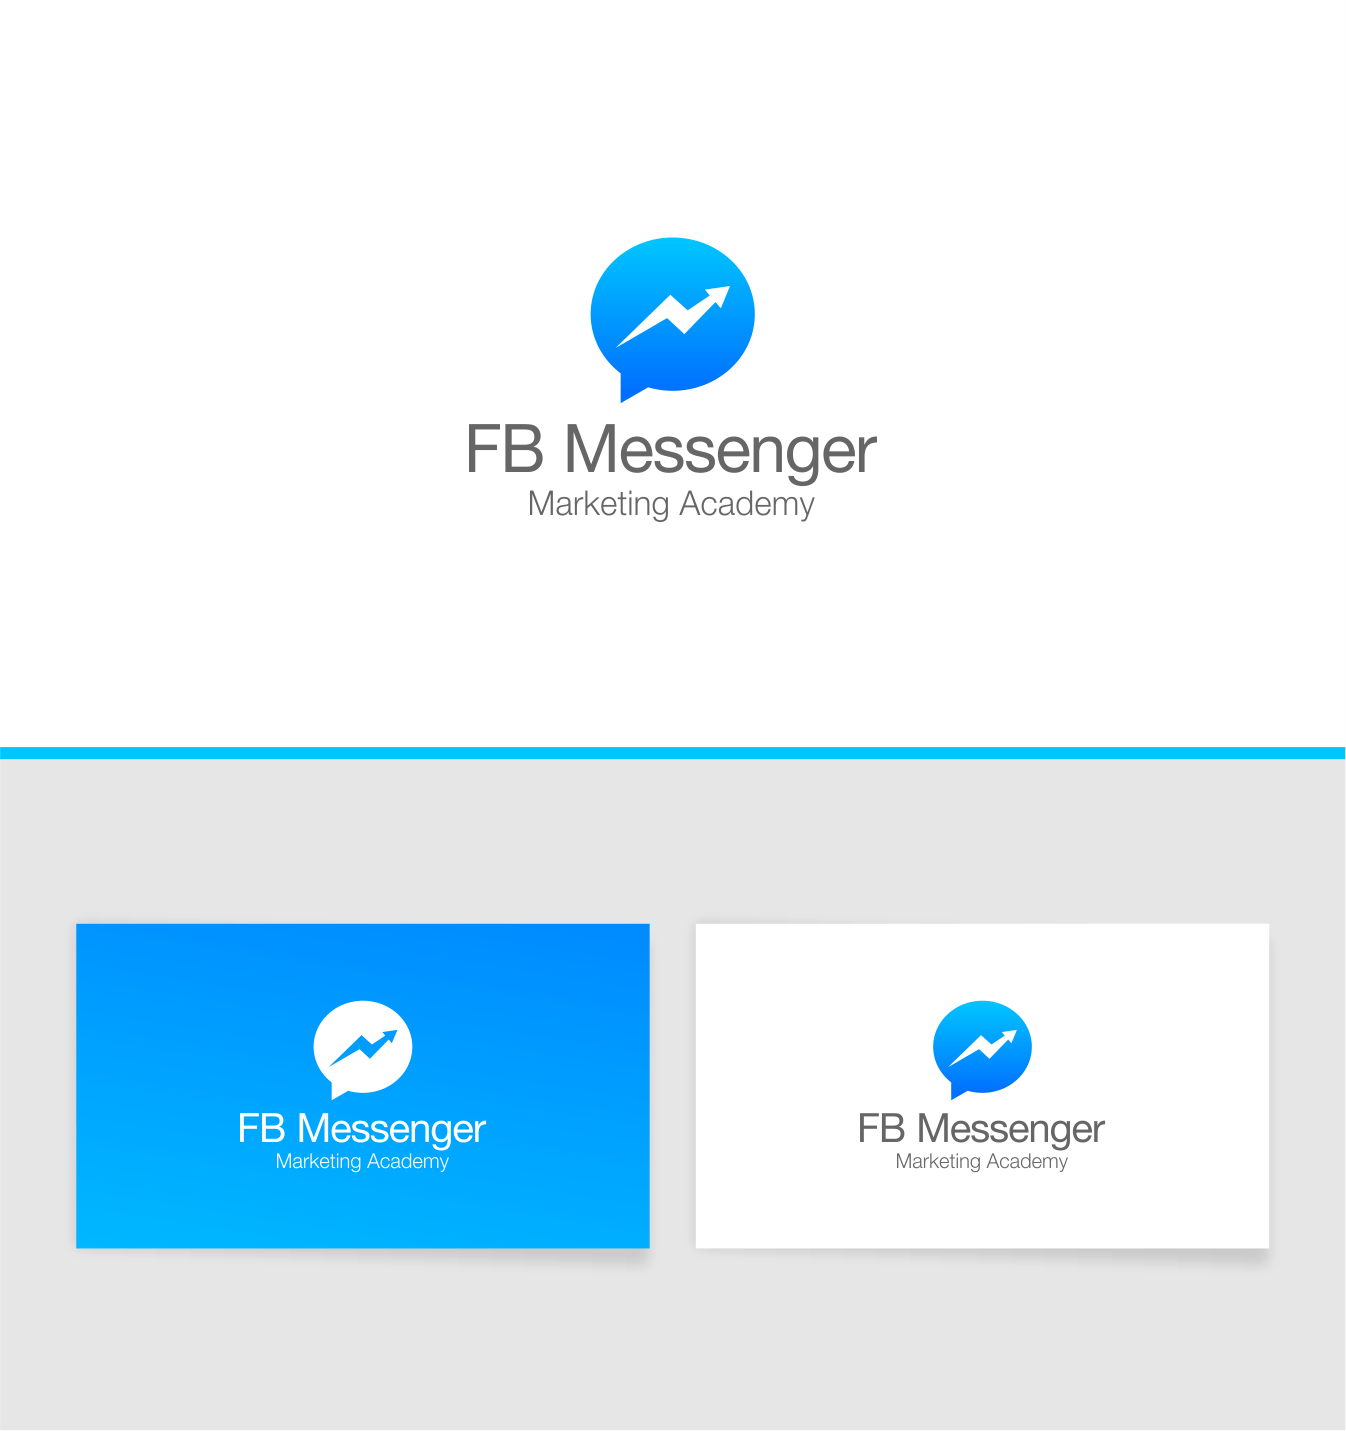 FB Messenger Logo - Serious, Professional, Marketing Logo Design for FB Messenger ...